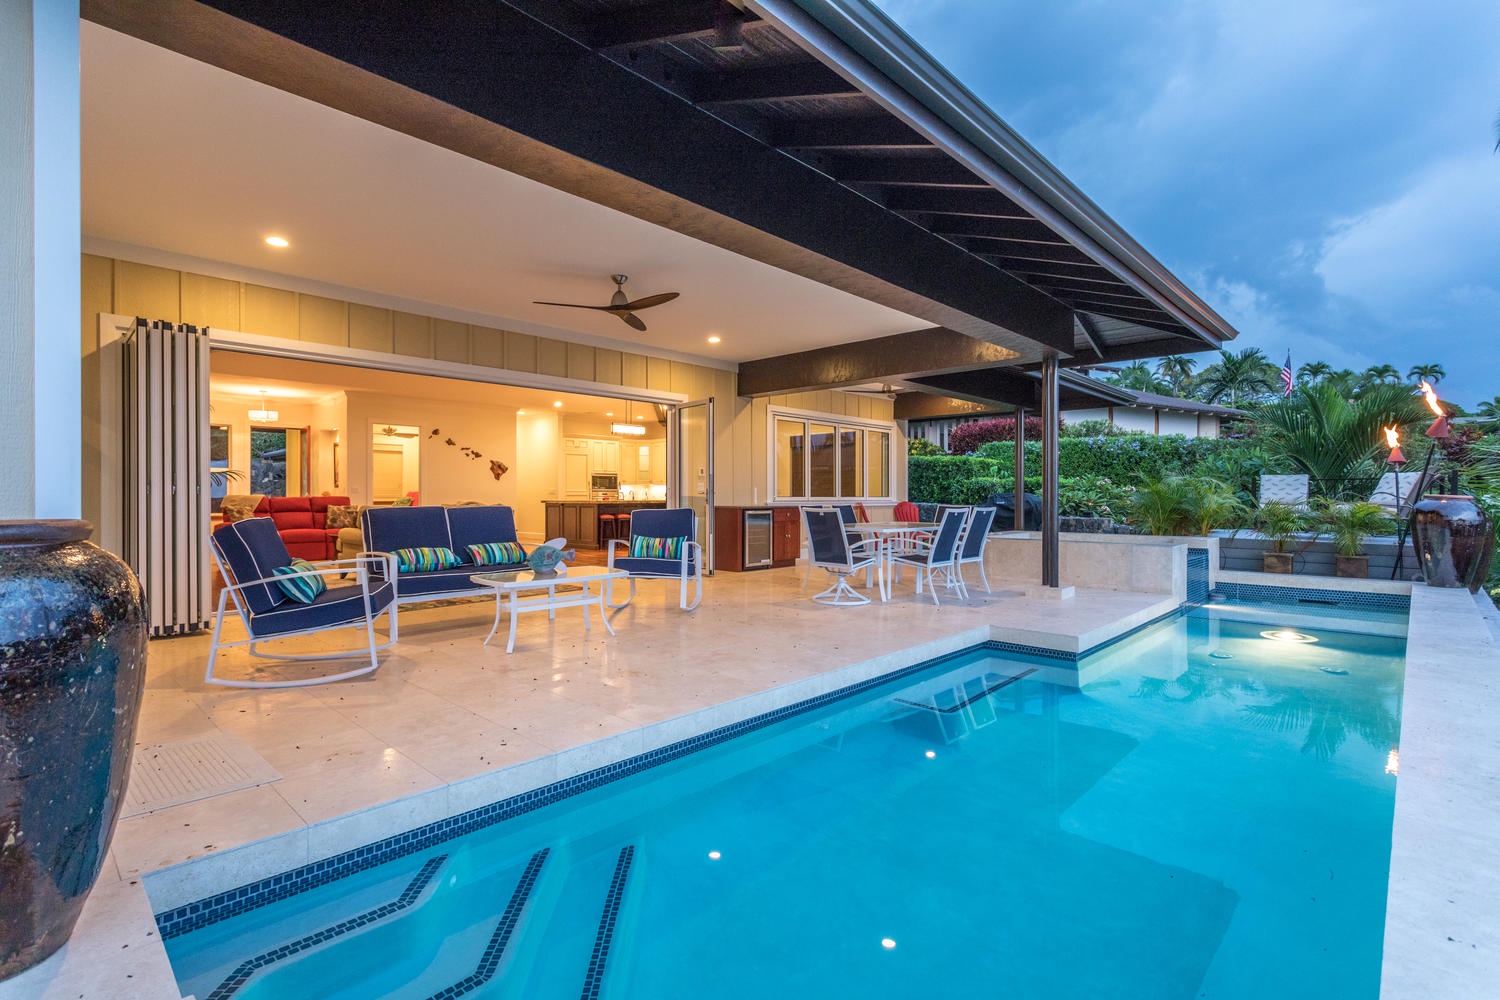 Kailua Kona Vacation Rentals, Ohana le'ale'a - Lounge poolside!